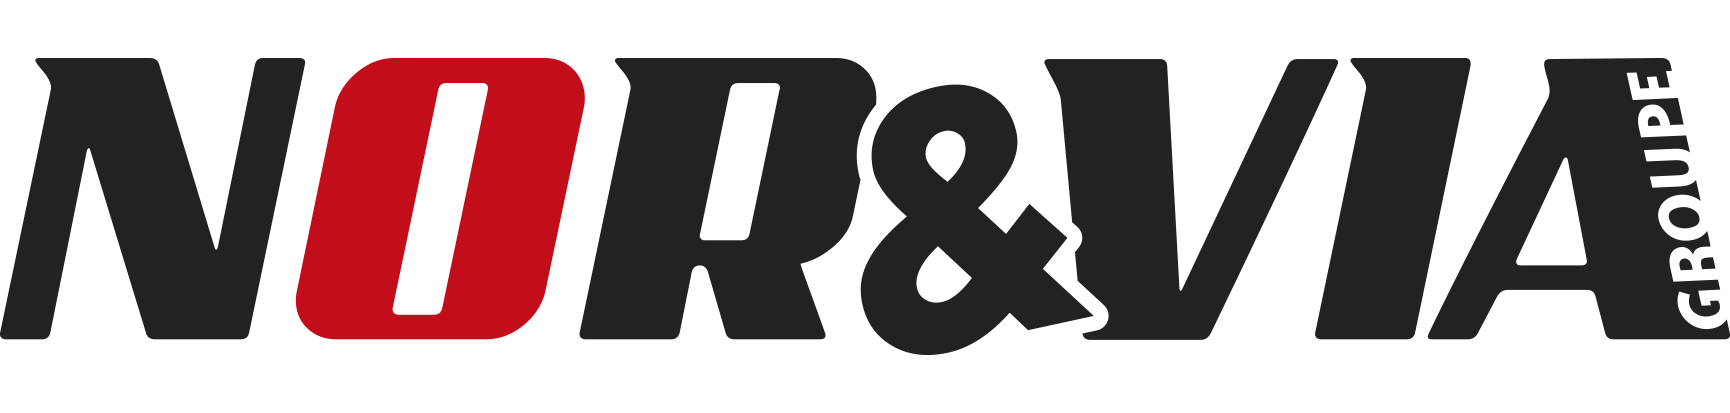 Nor & Via group logo